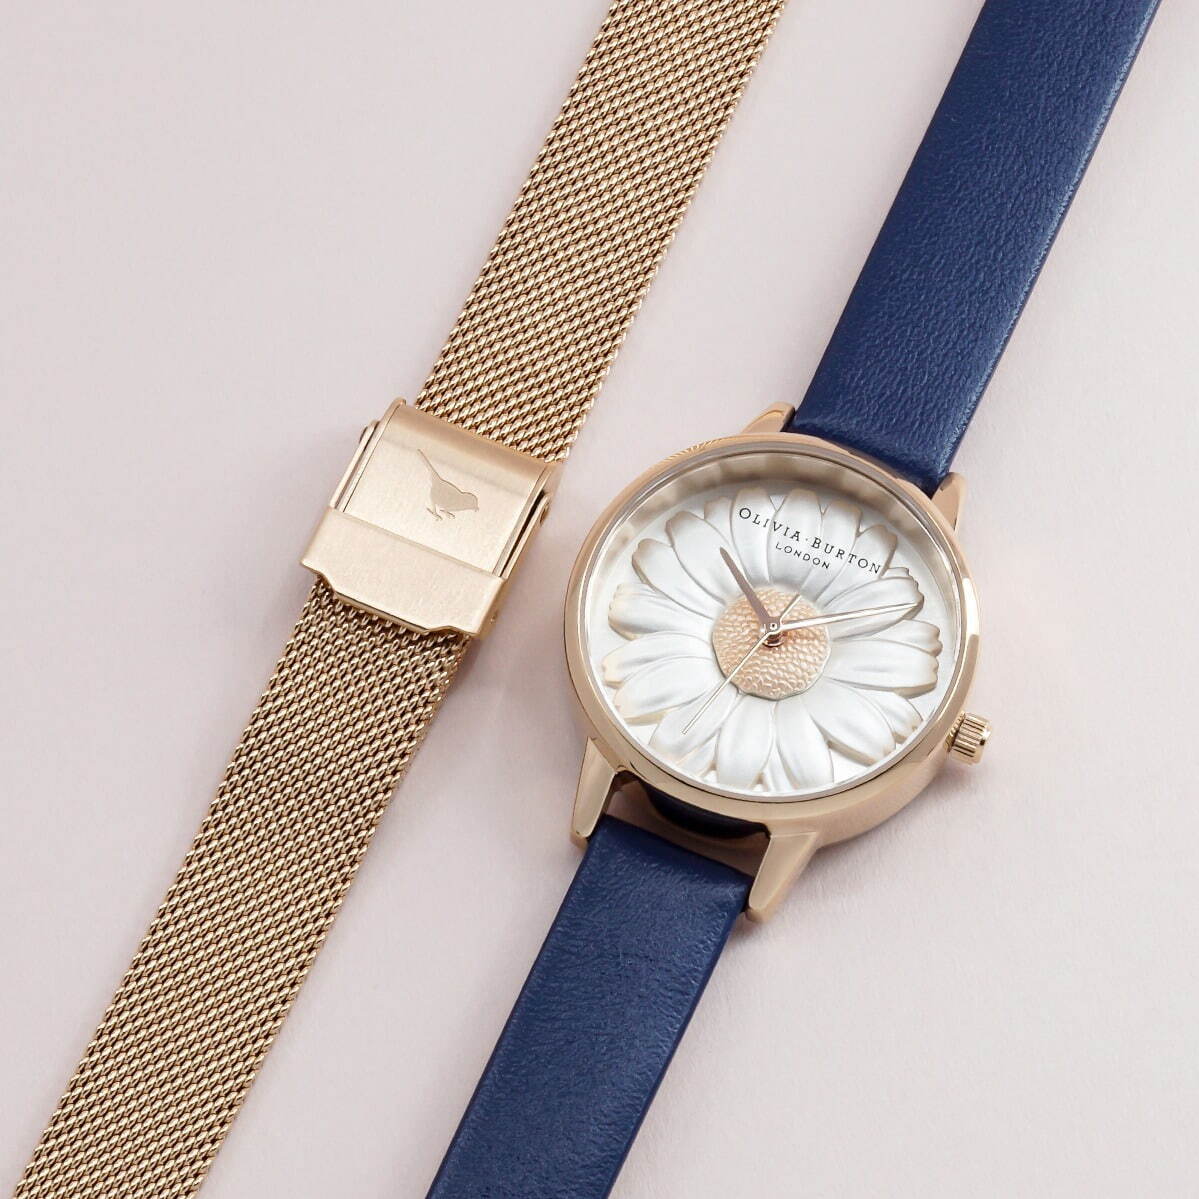 オリビア・バートンのバレンタイン、「3D デイジー」腕時計にネイビー 